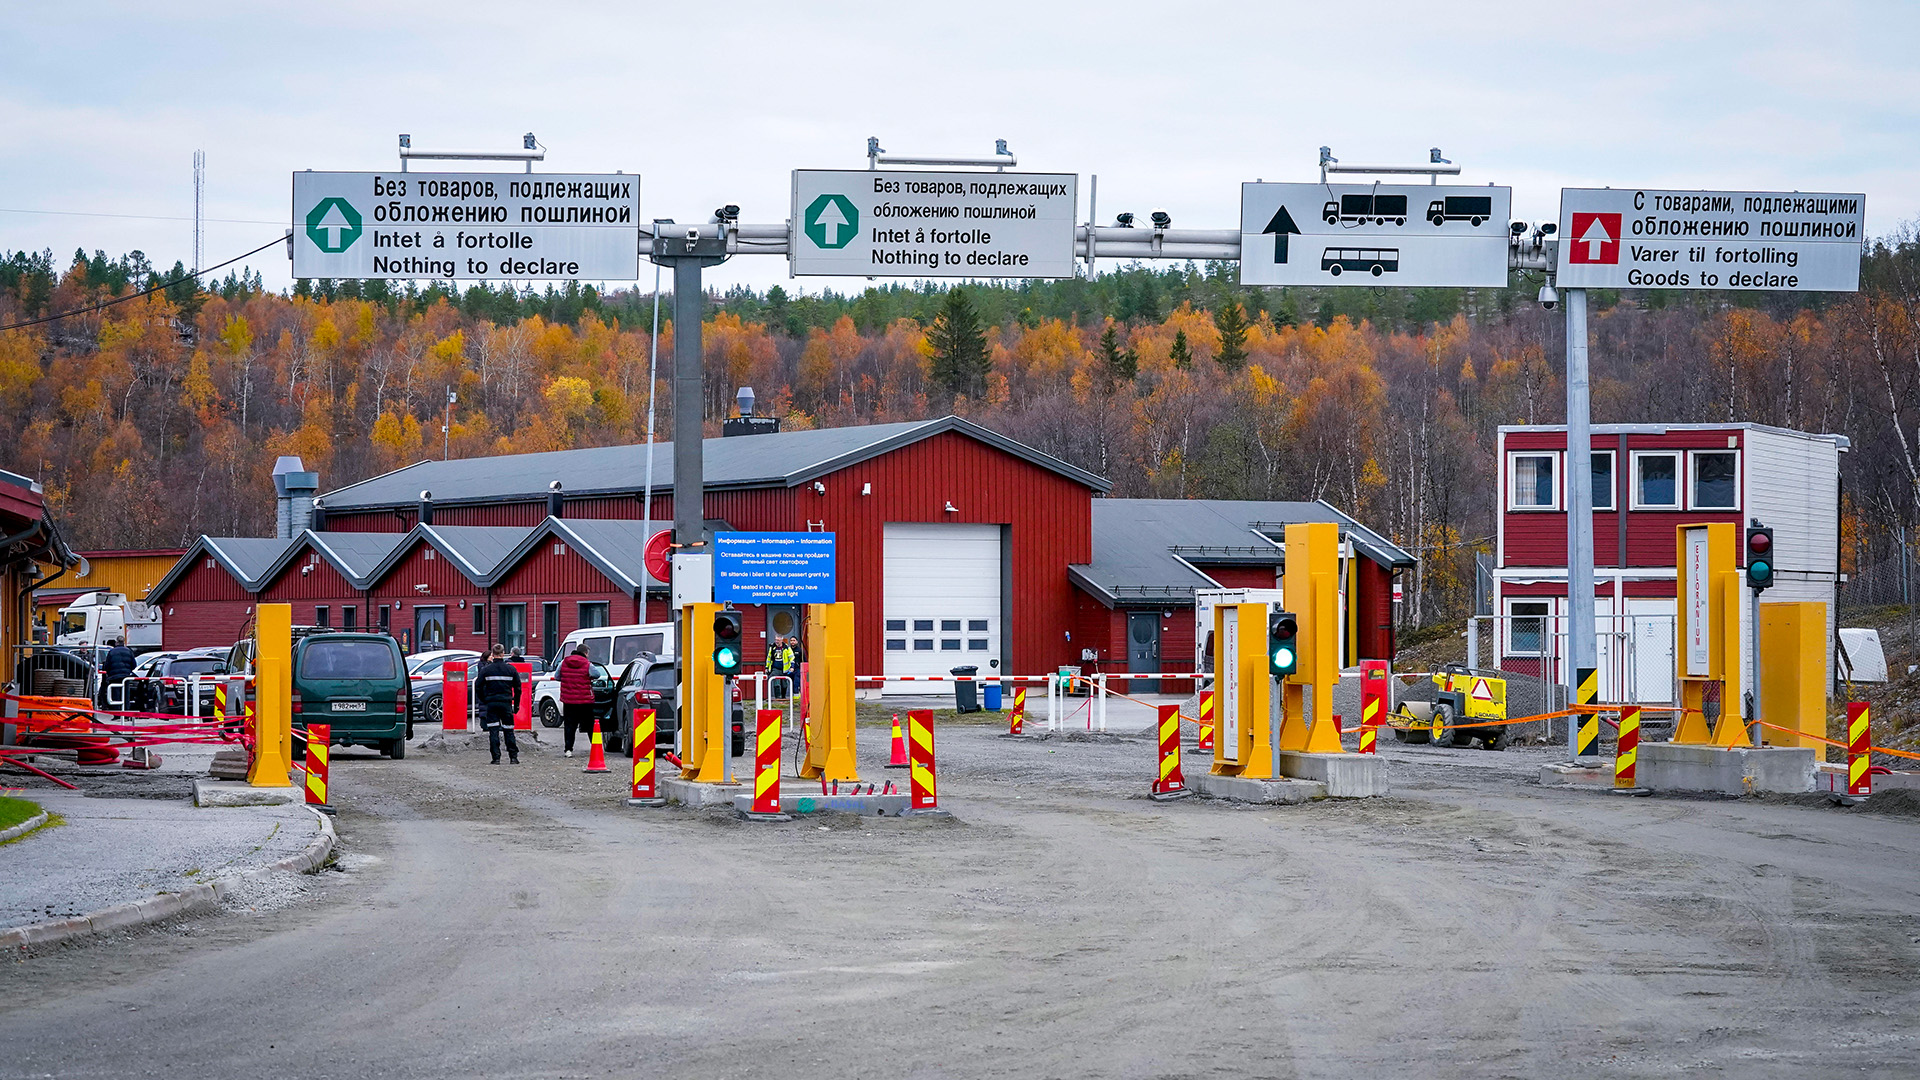 Grenzübergang mit Hinweisschildern auf Russisch, Norwegisch und Englisch